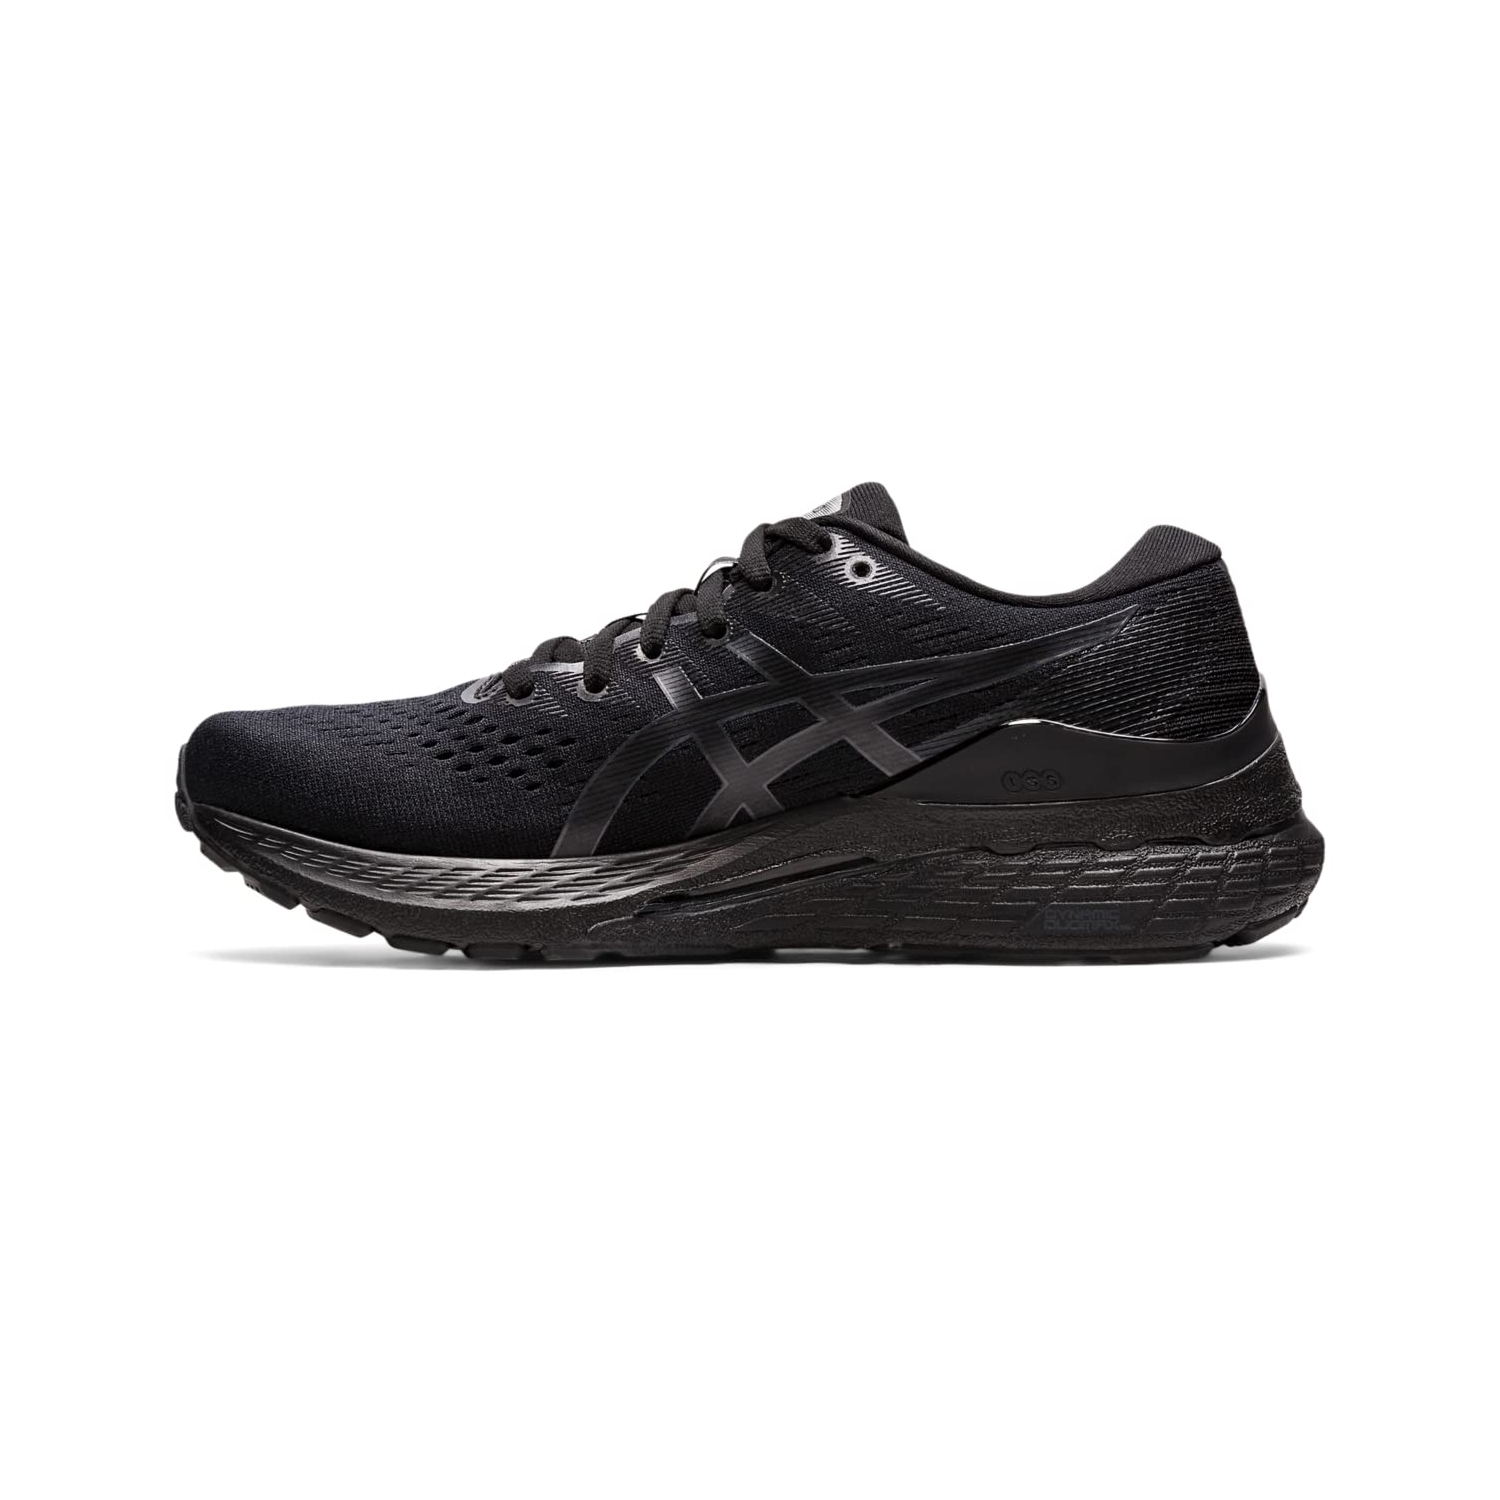 ASICS Women's Gel-Kayano 28 Running Shoes, 6, Black/Graphite Grey